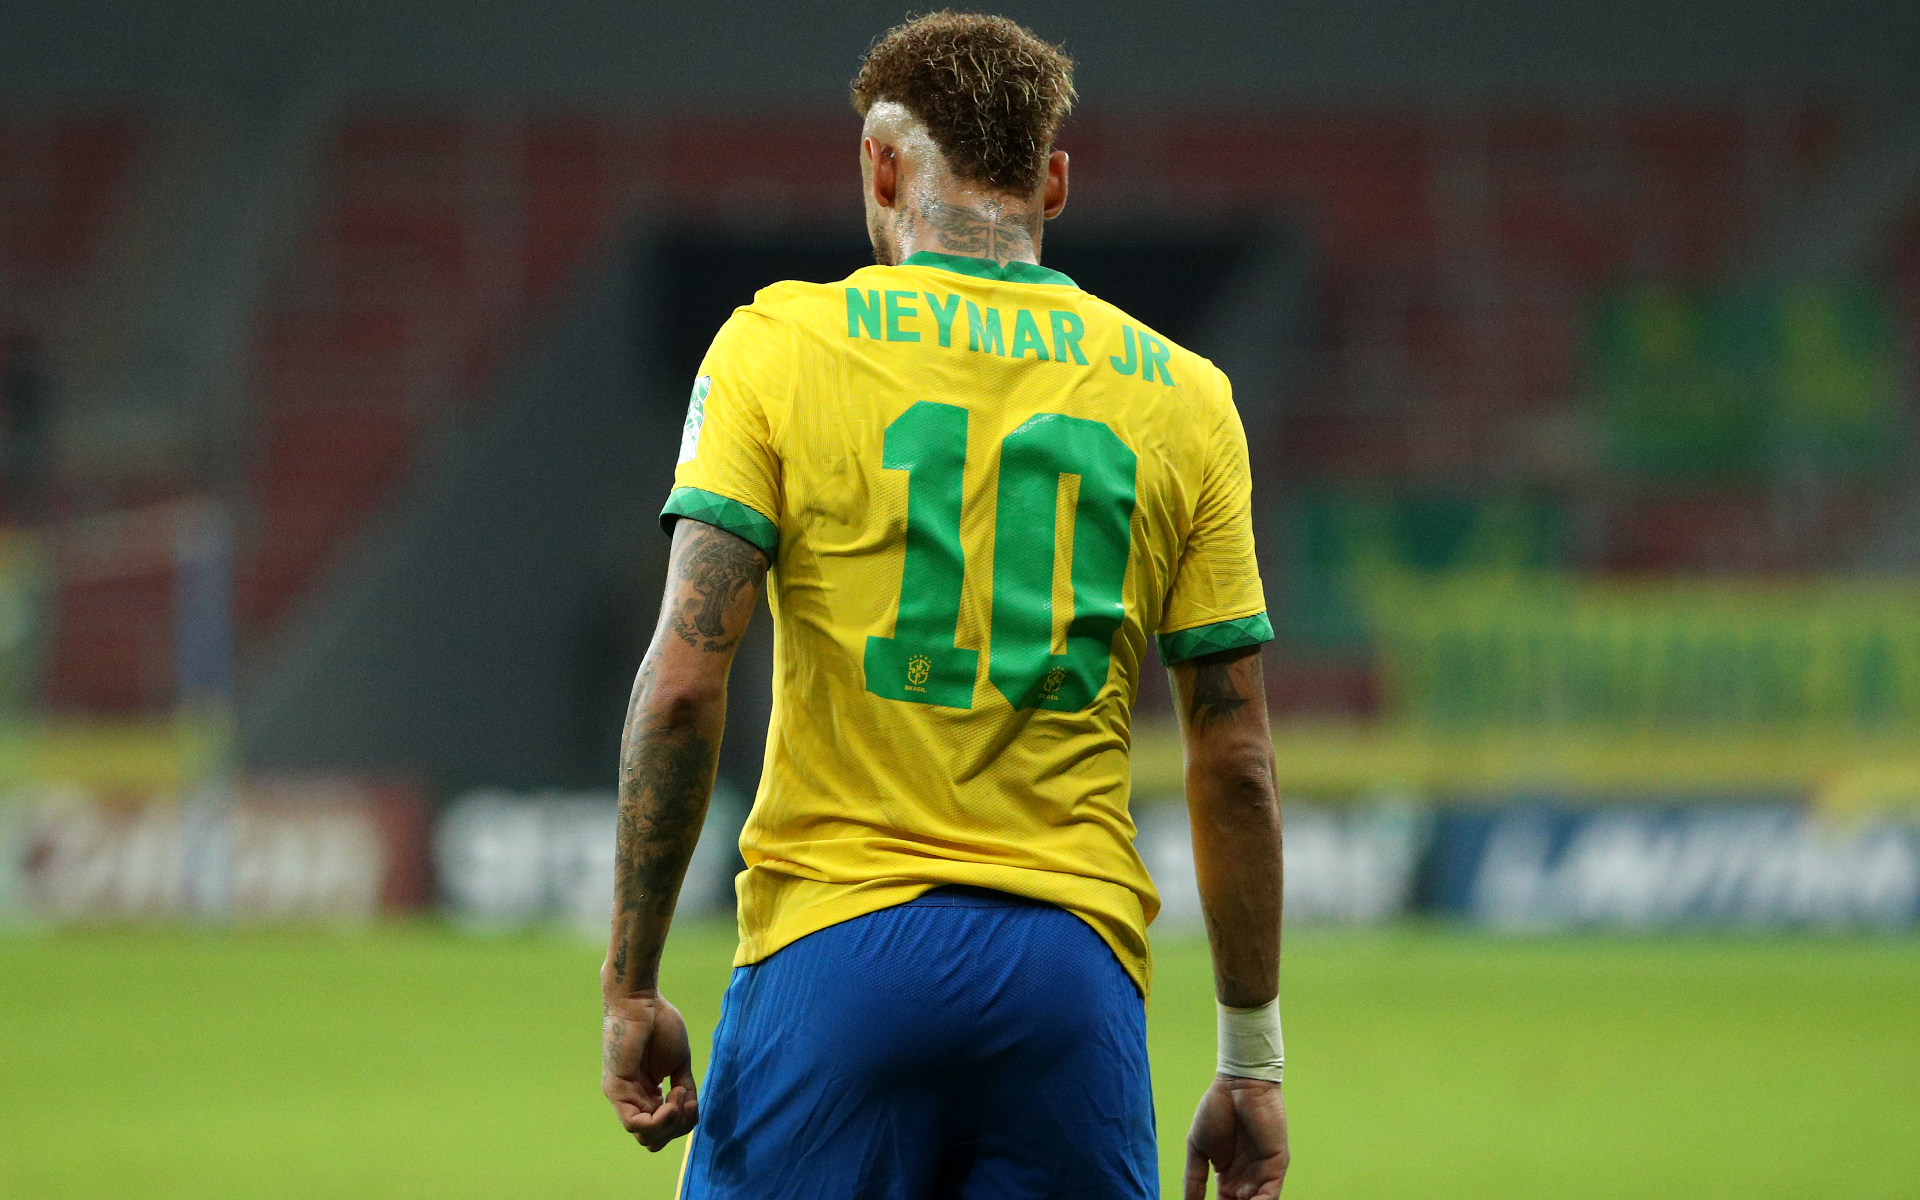 Бразилия бойкотирует домашний Кубок Америки. Что важно знать :: Футбол ::  РБК Спорт